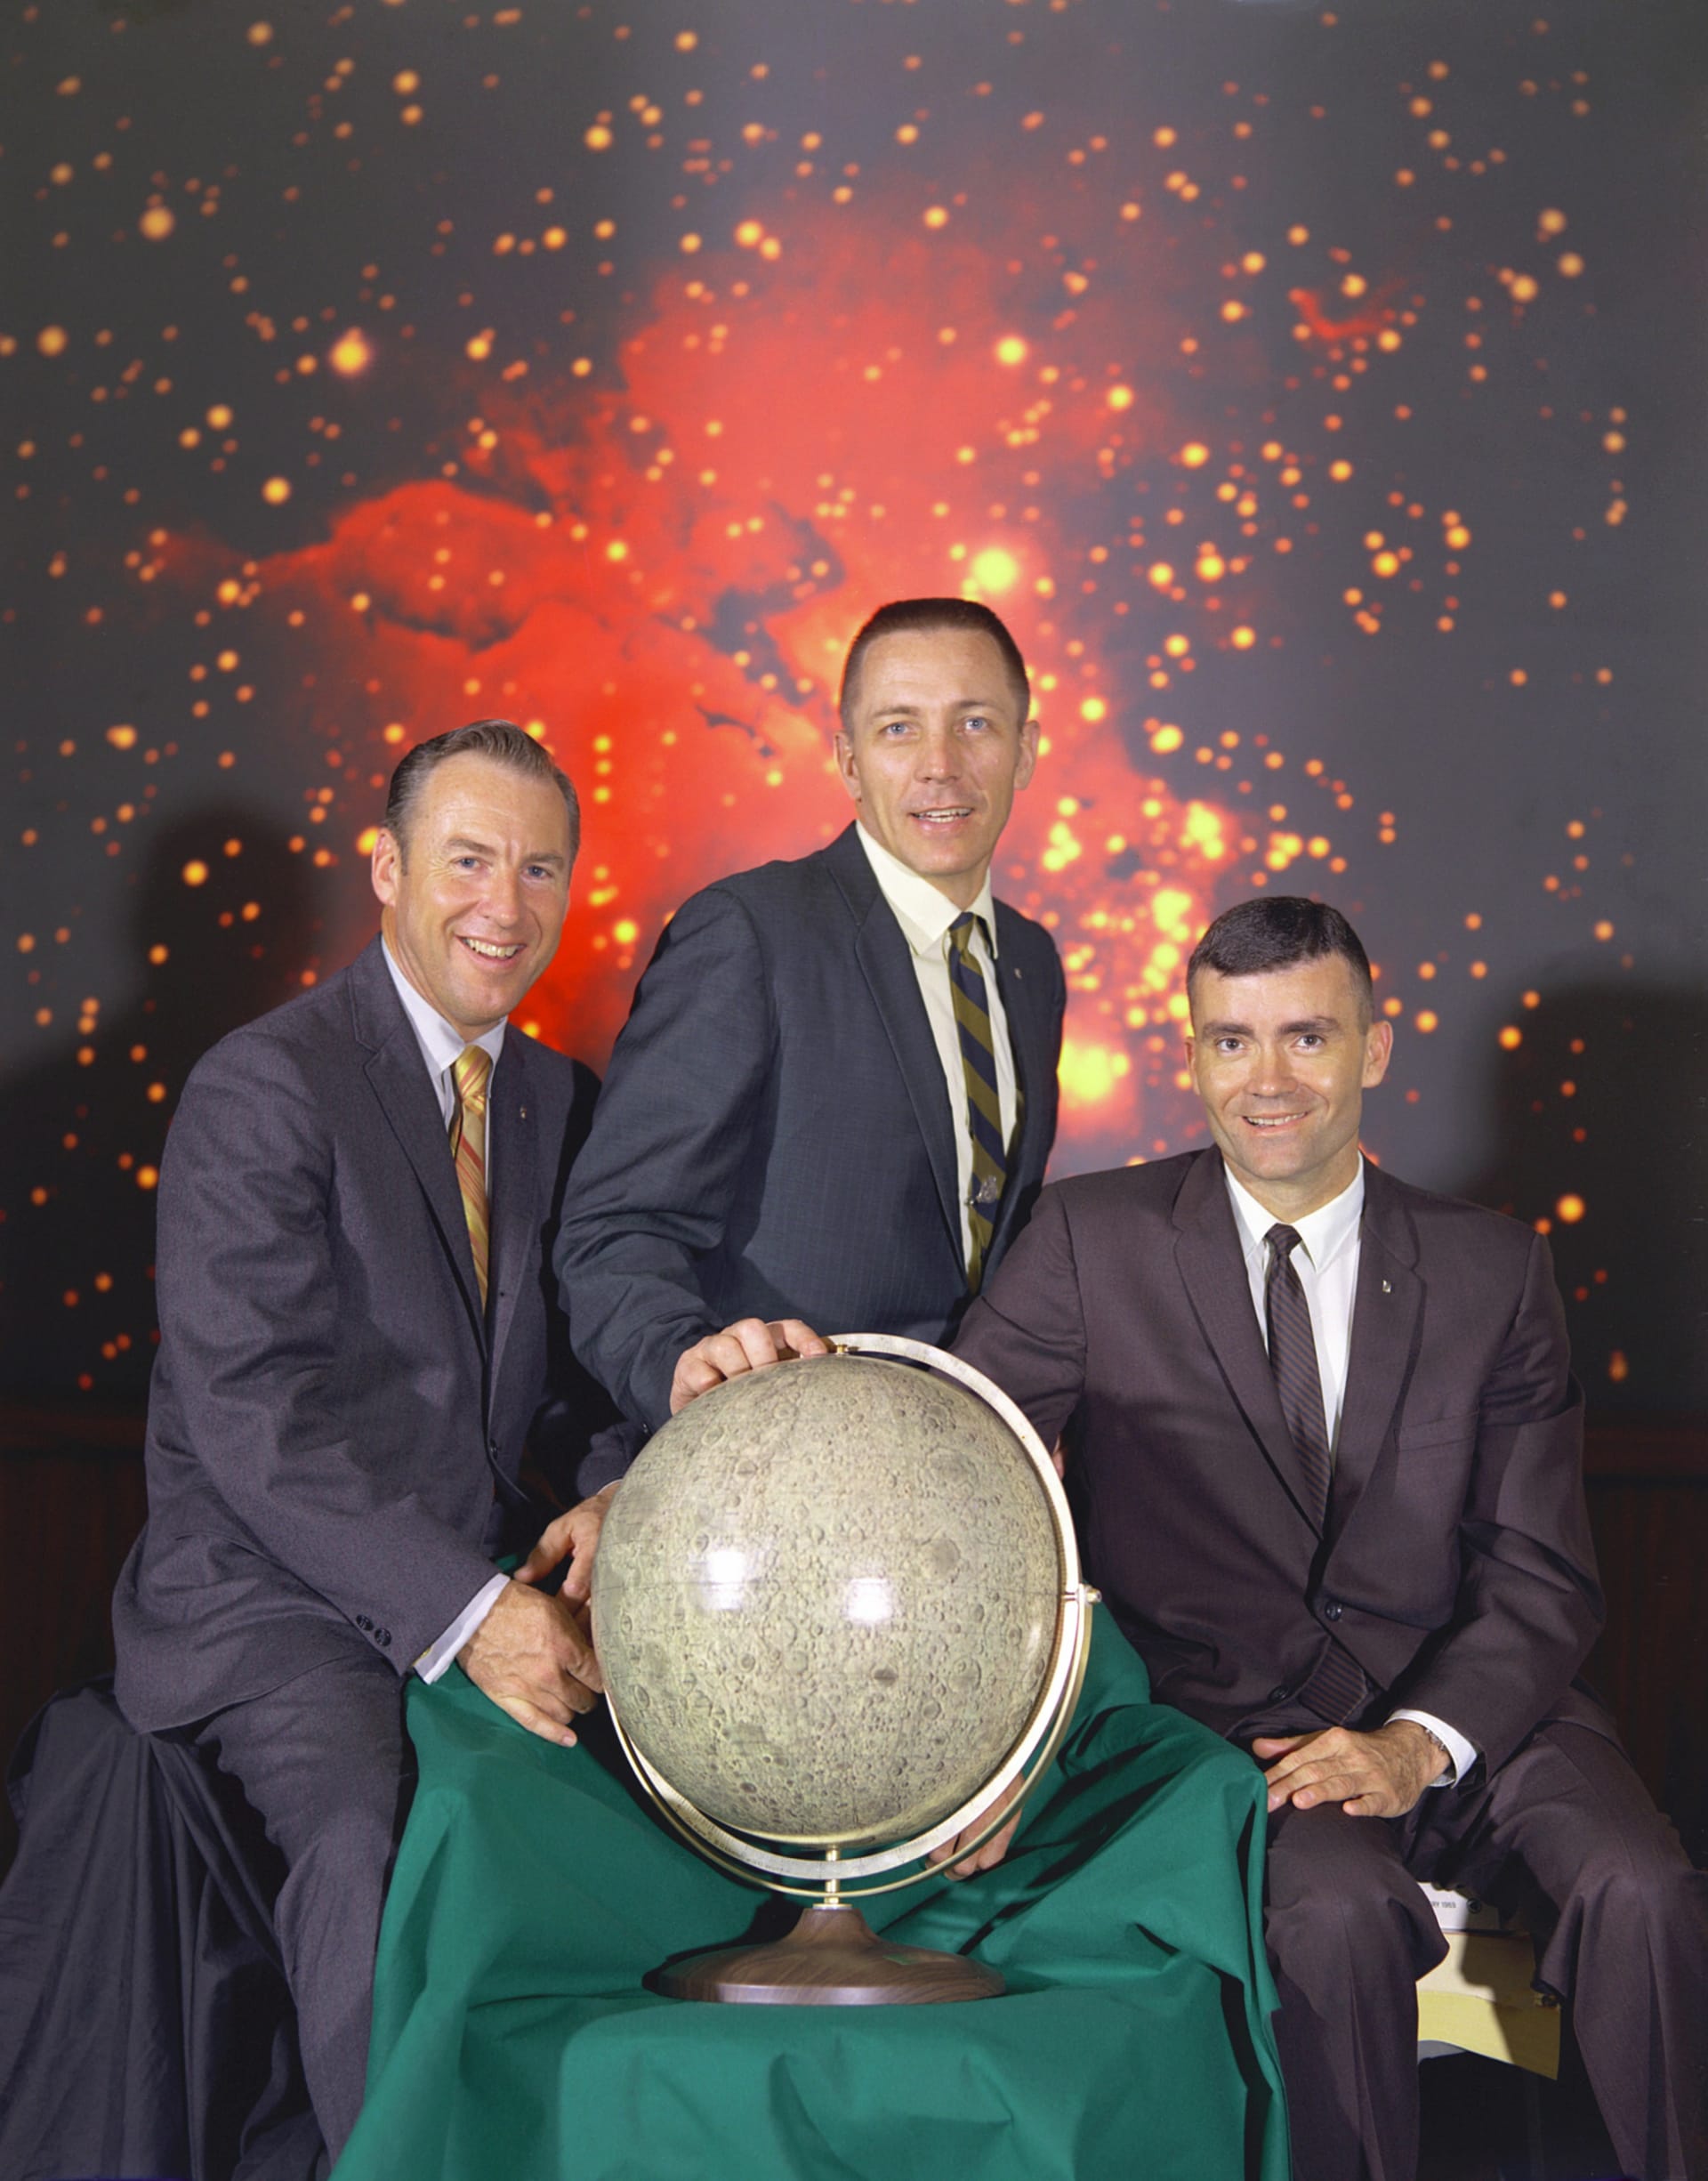 Dvanáct dní po přistání. Posádka Apolla 13, zleva: James Lovell, John Swigert a Fred Haise.